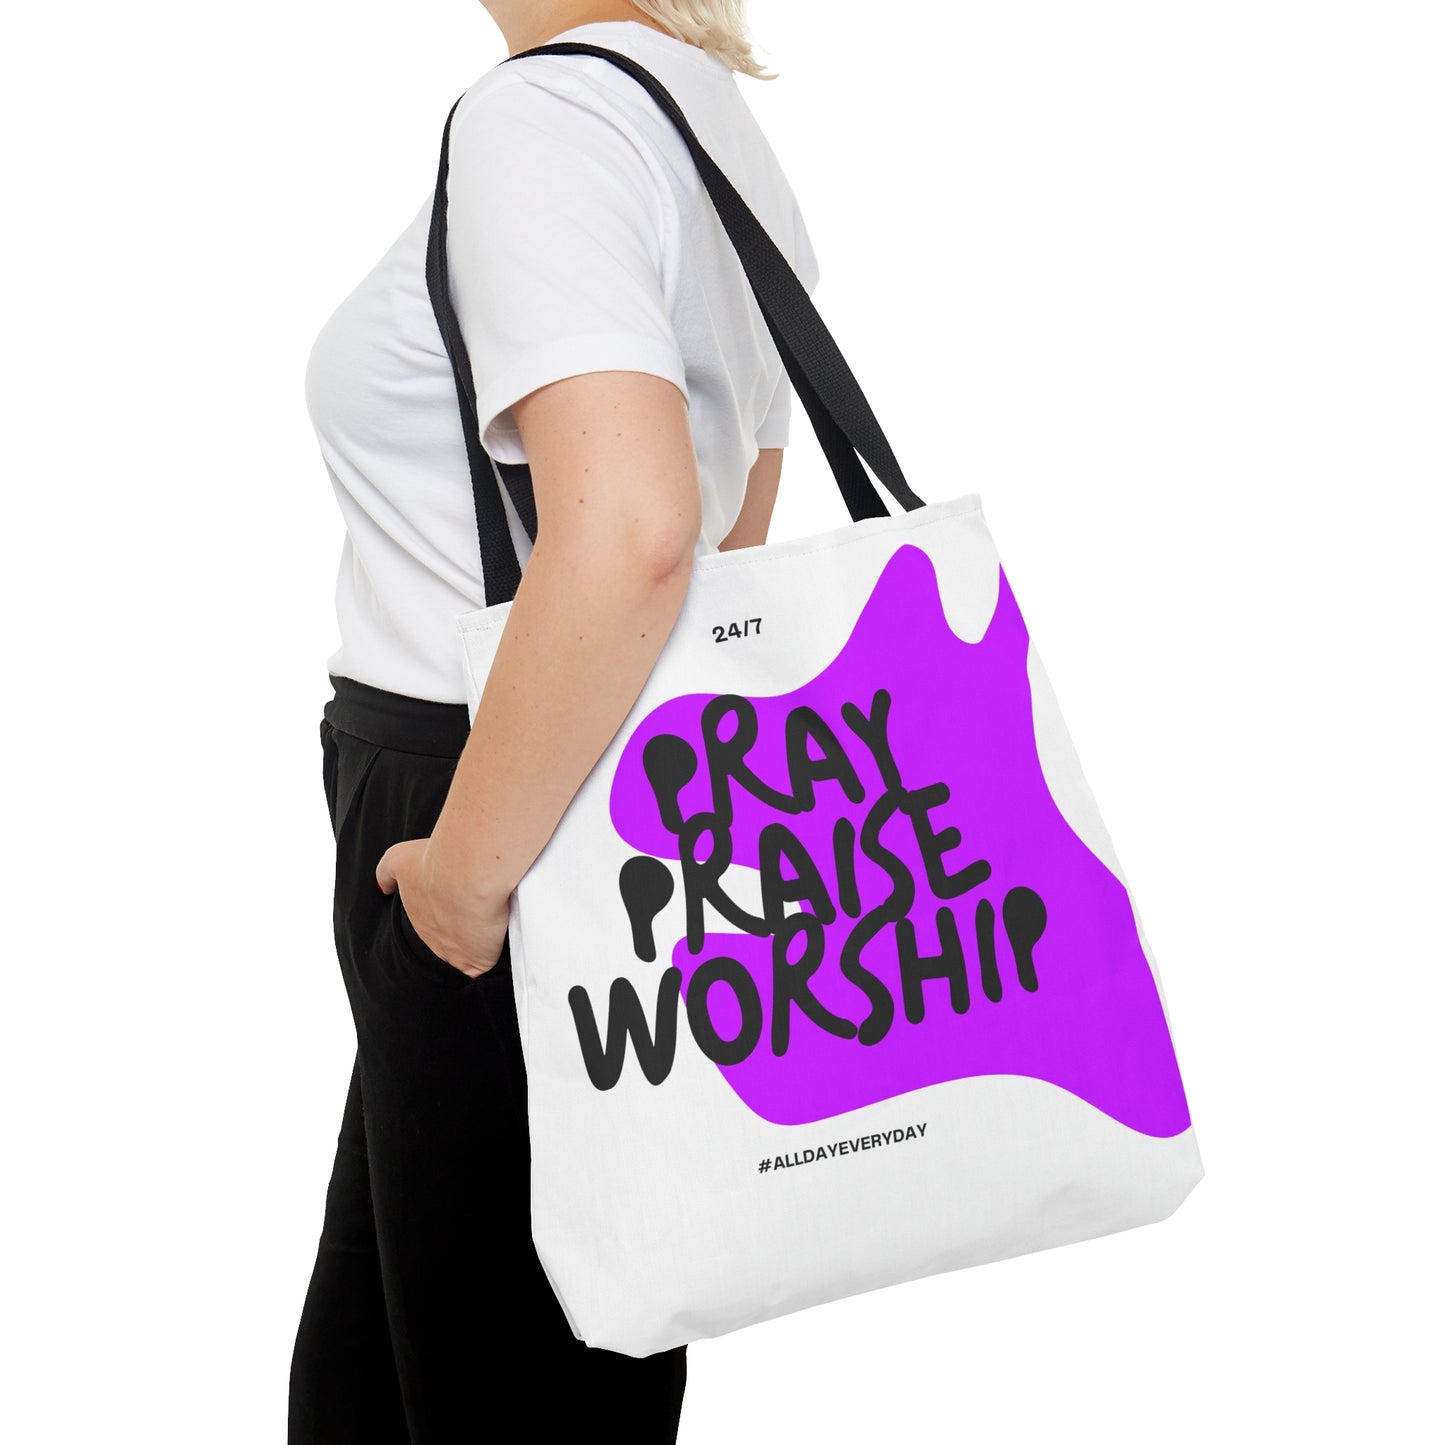 Pray Praise Worship Tote Bag